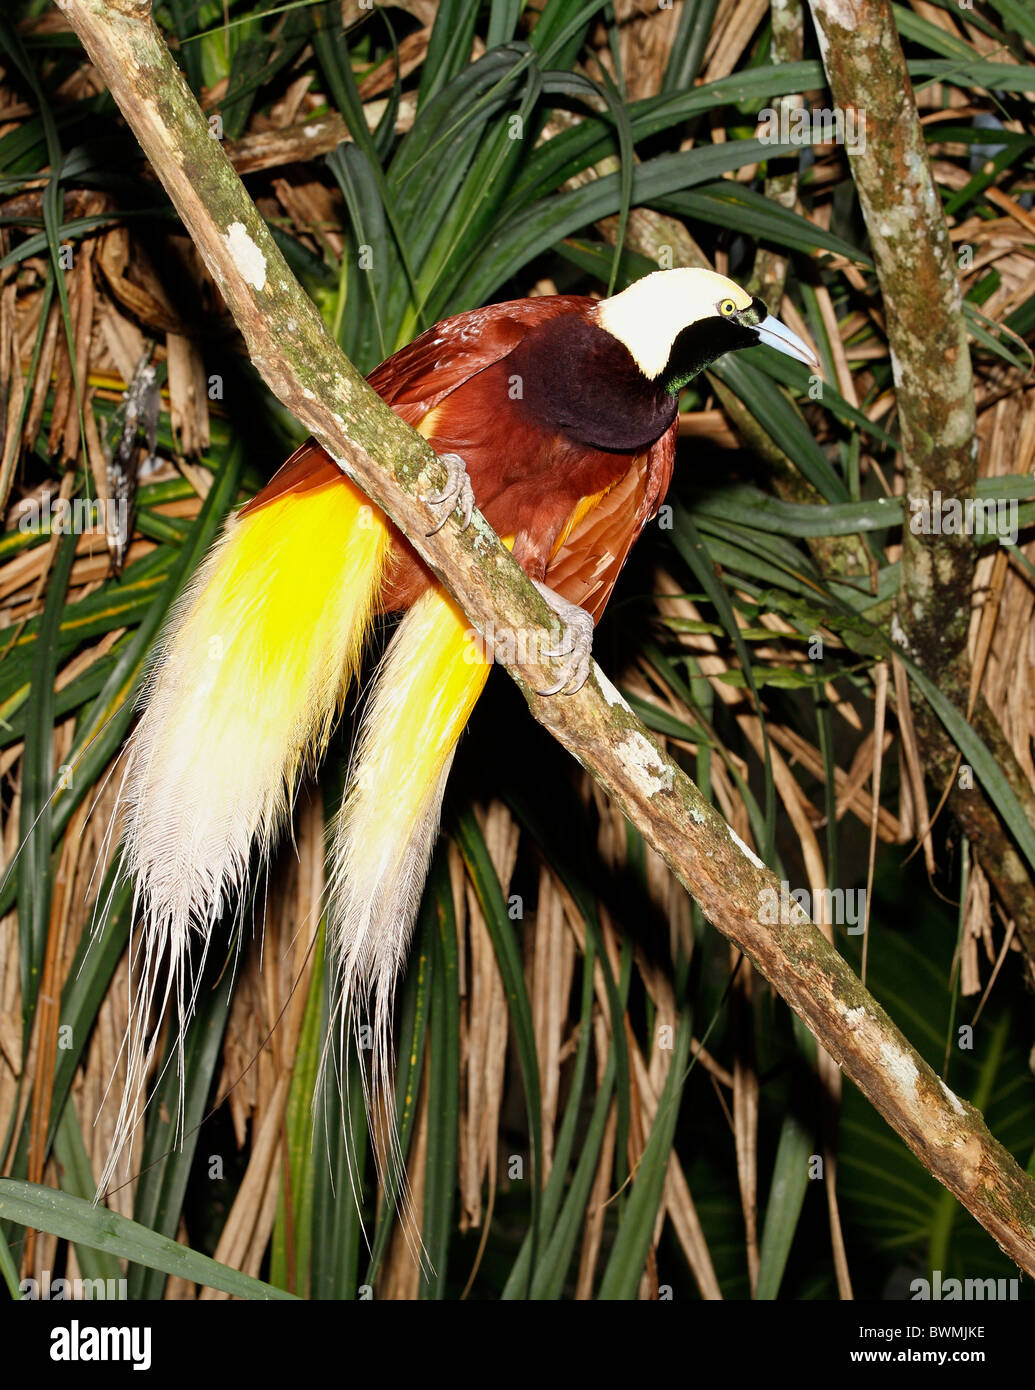 Maggiore uccello del paradiso, Paradisaea apoda, trovati in Papua Nuova Guinea e in alcune parti dell'Indonesia. Sembra essere un maschio Foto Stock